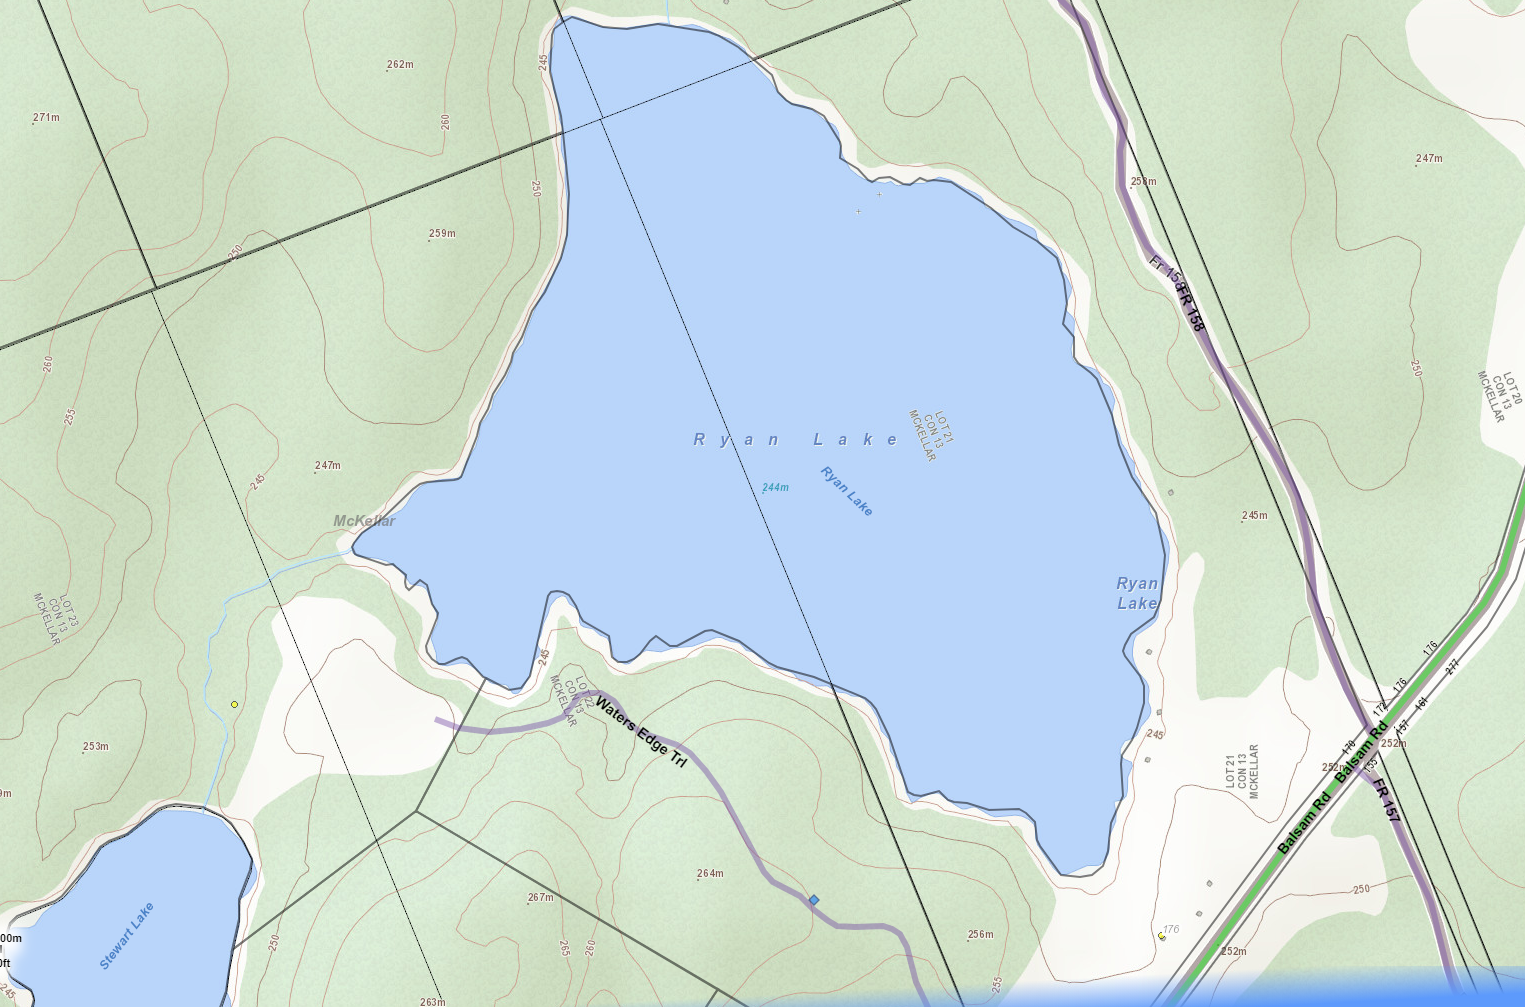 Tarver Lake Cadastral Map - Tarver Lake - Muskoka